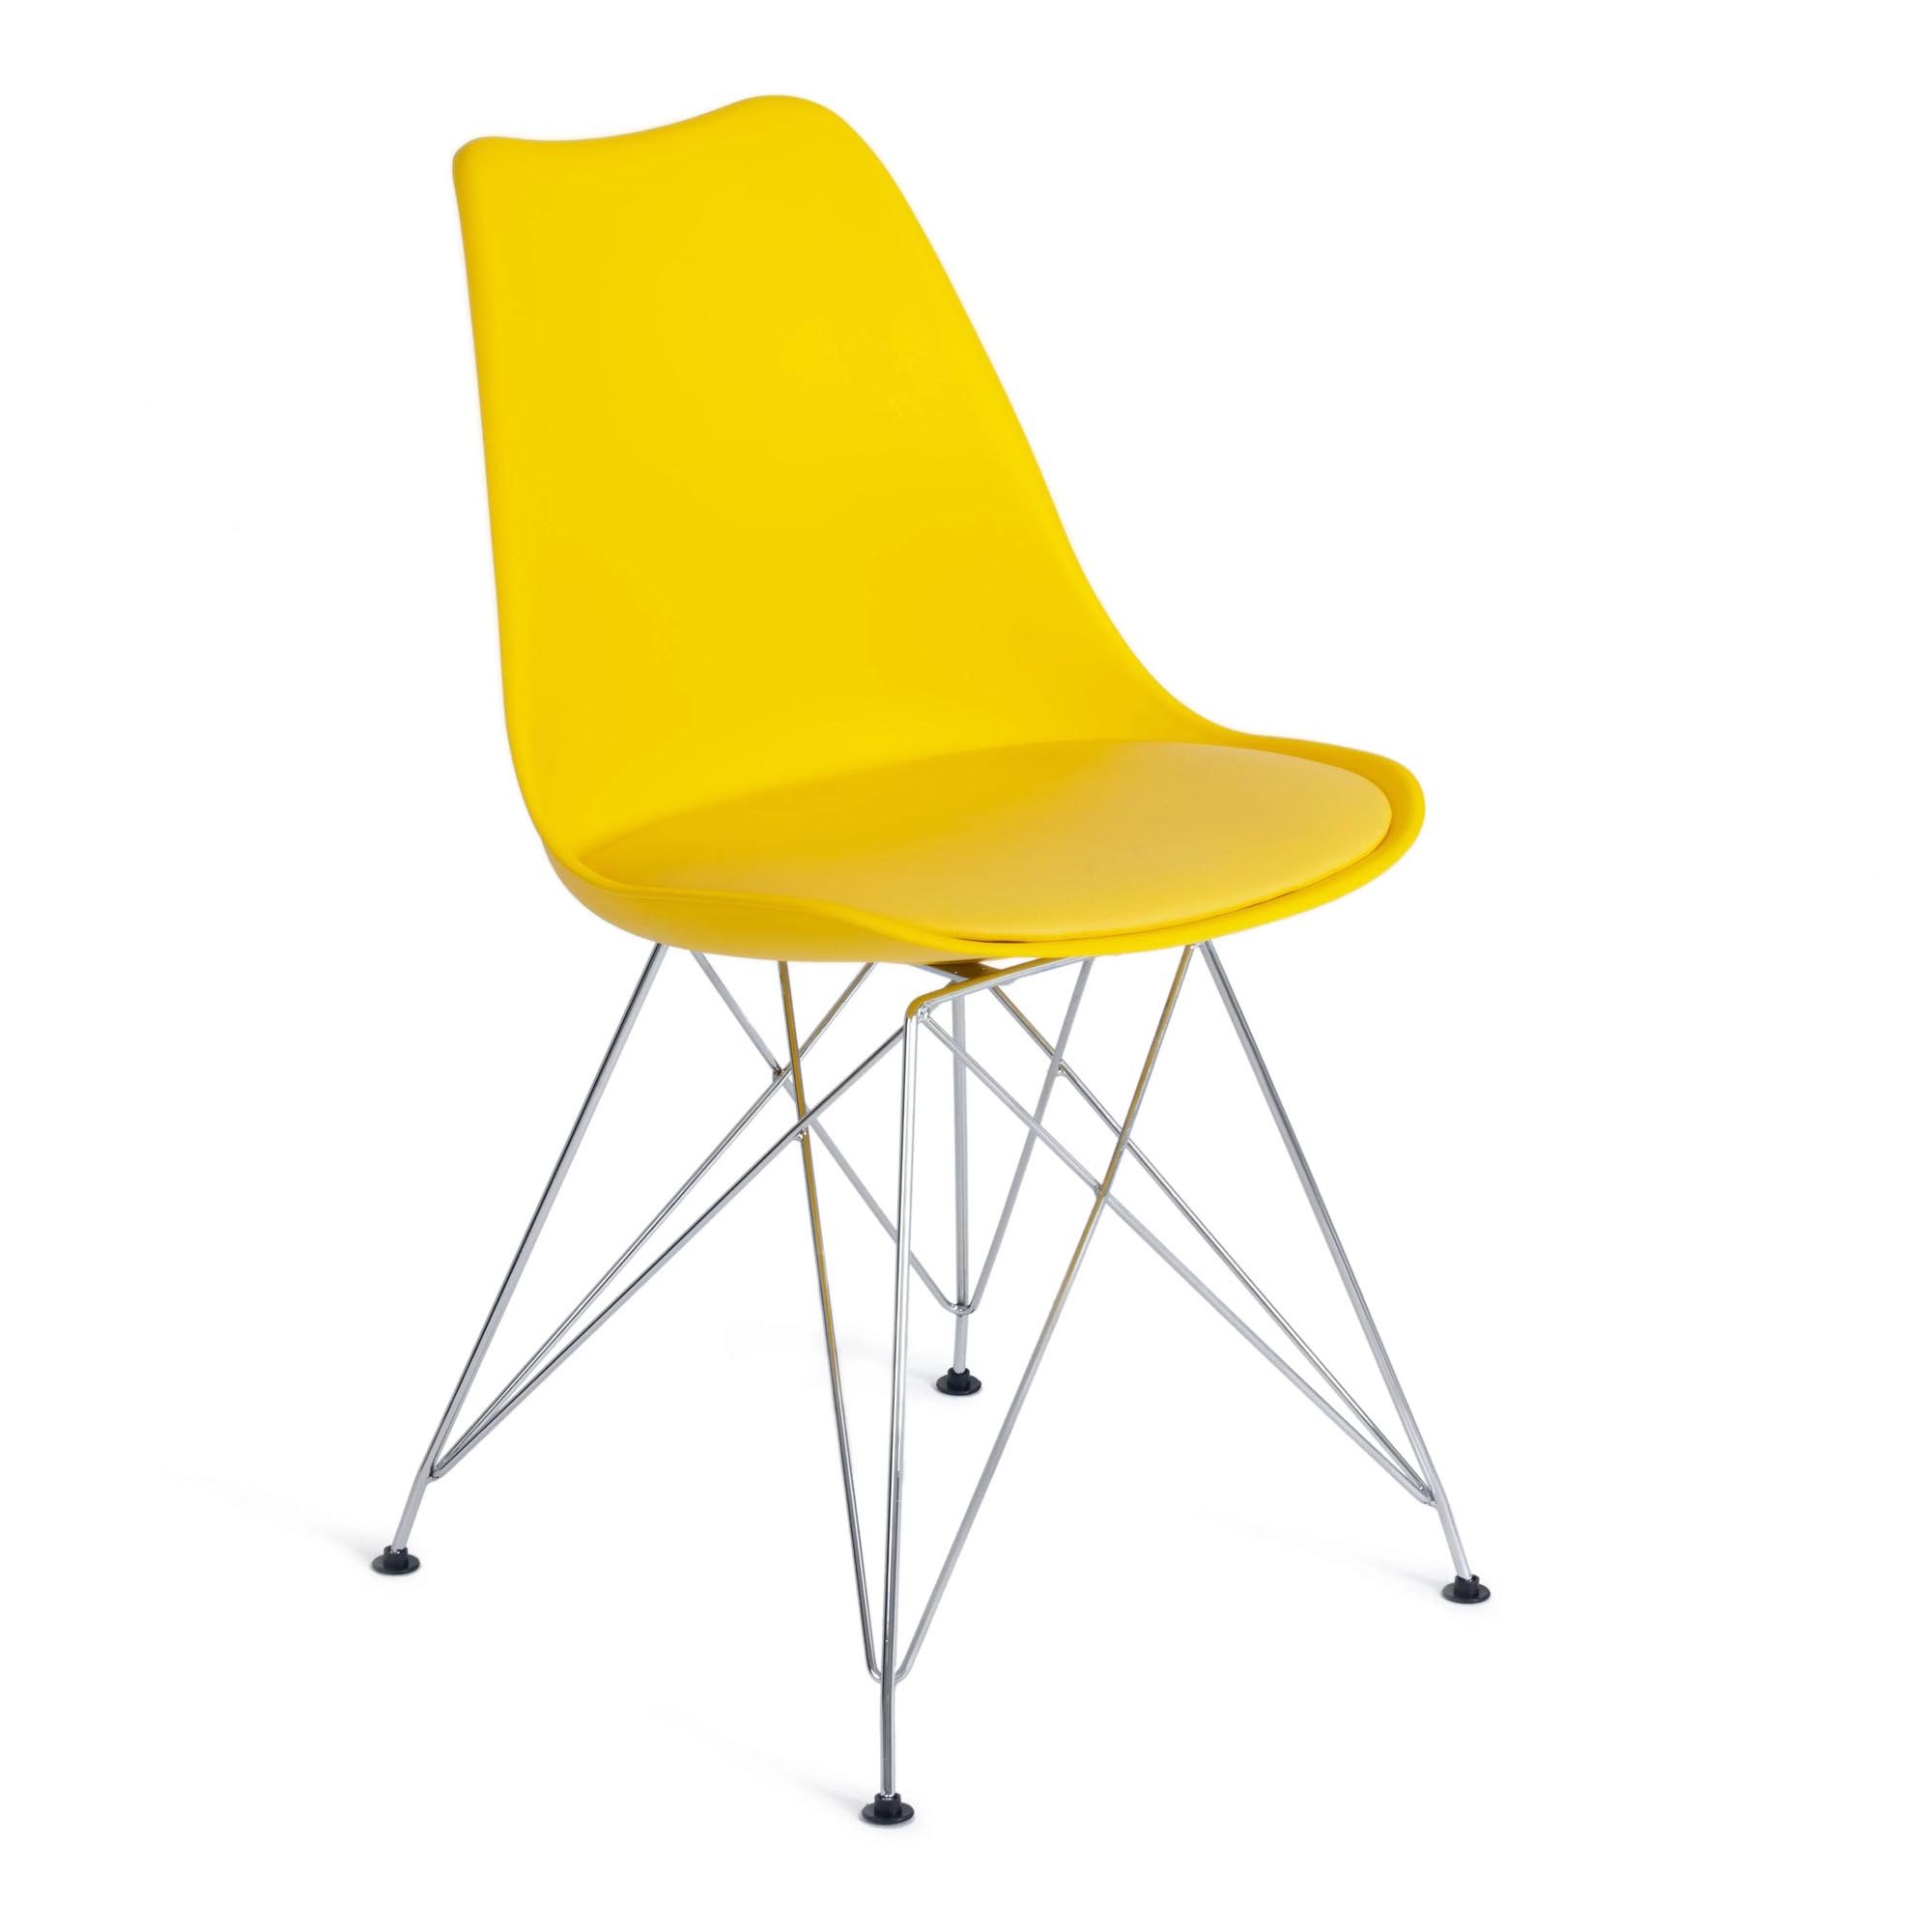 Стул TC Tulip Iron Chair 54,5x48x83,5 см желтый стул tc tulip fashion chair 55x48x81 см белый